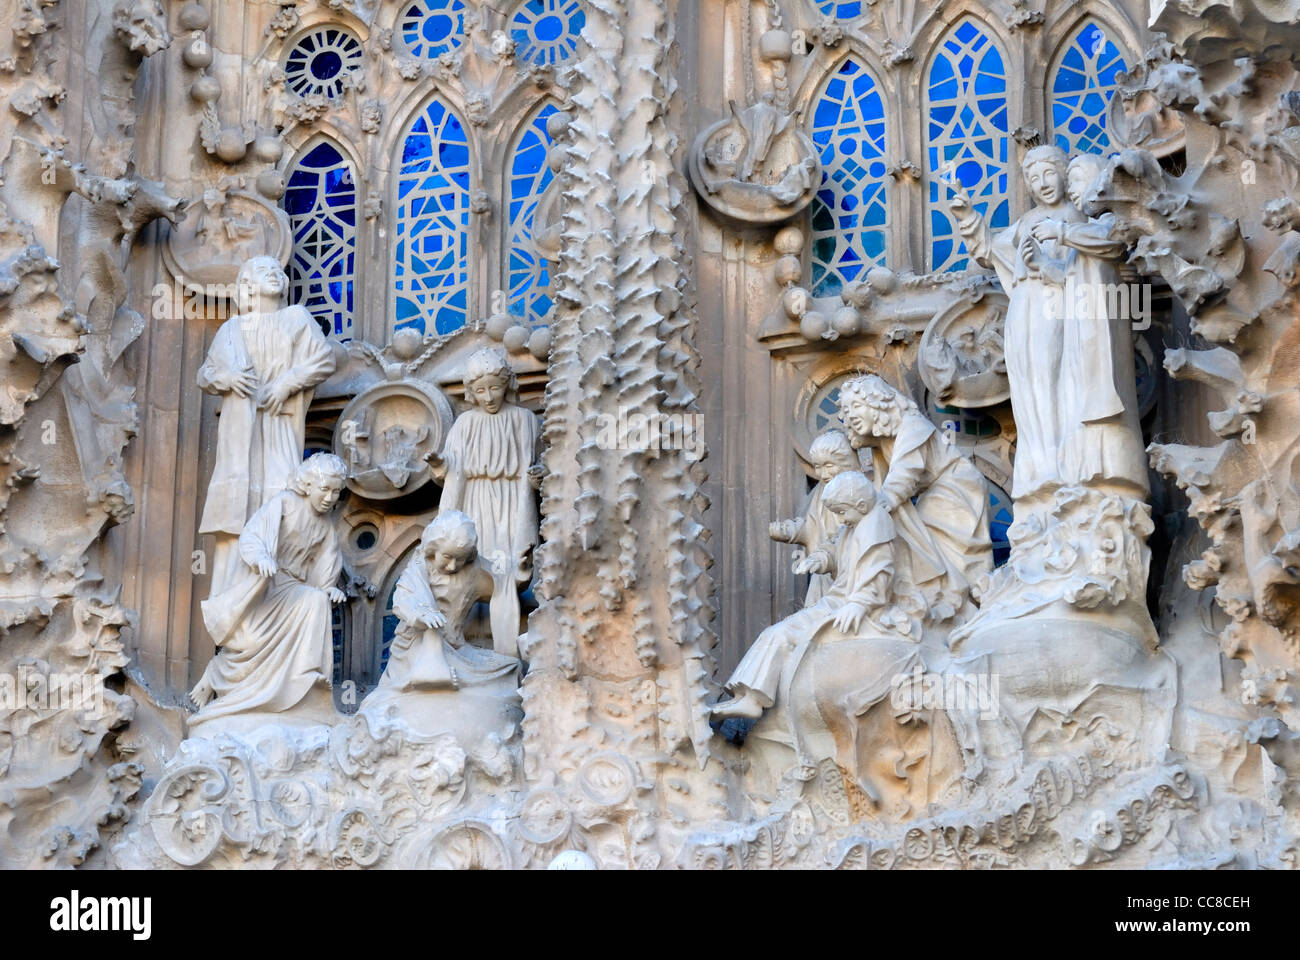 Barcelone, Espagne. Temple de la Sagrada Familia (Antoni Gaudi, commencé en 1882, pas encore achevé) Détail de l'Est ou la façade de la Nativité Banque D'Images